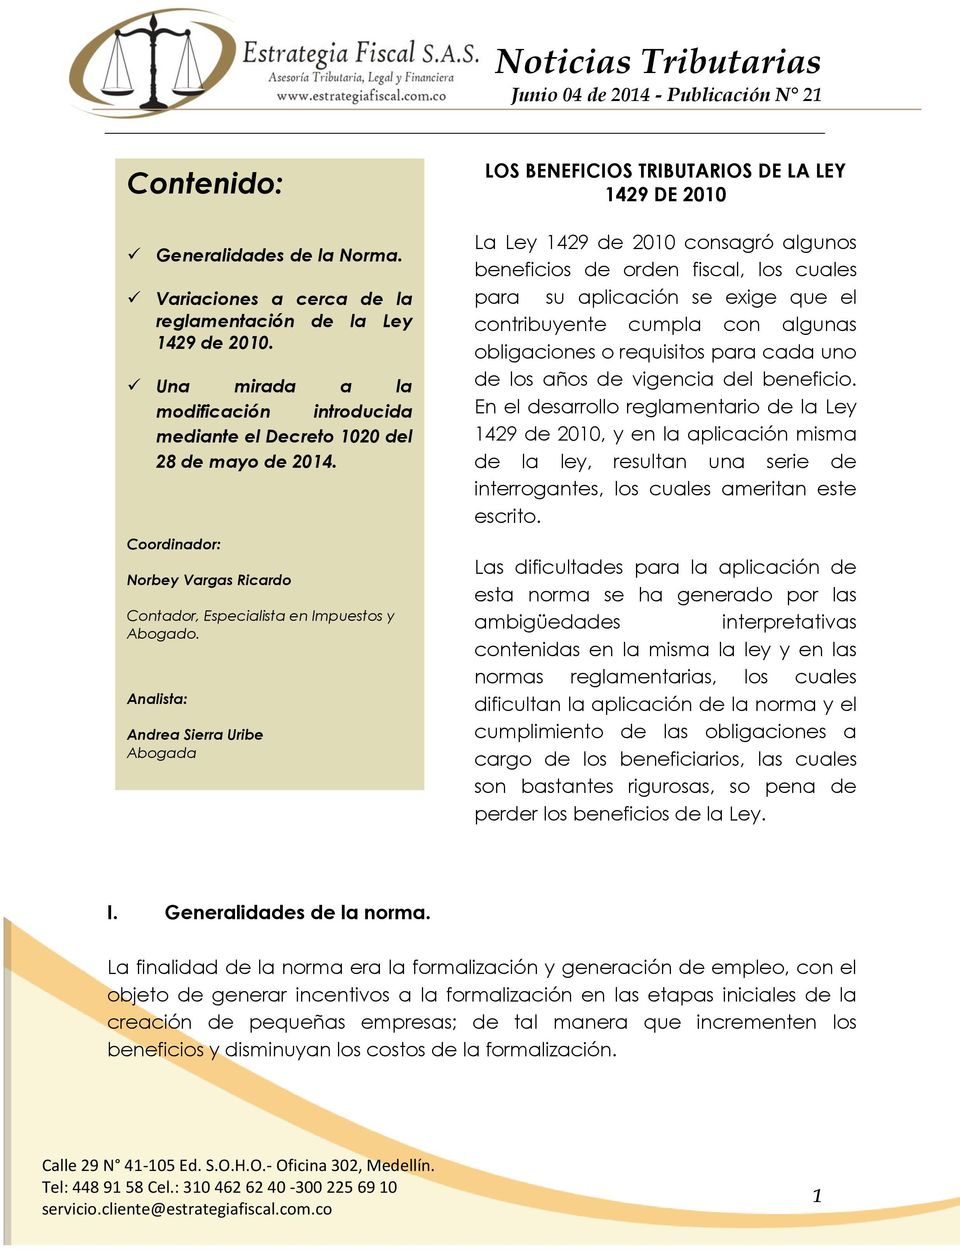 Analista: Andrea Sierra Uribe Abogada LOS BENEFICIOS TRIBUTARIOS DE LA LEY 1429 DE 2010 La Ley 1429 de 2010 consagró algunos beneficios de orden fiscal, los cuales para su aplicación se exige que el